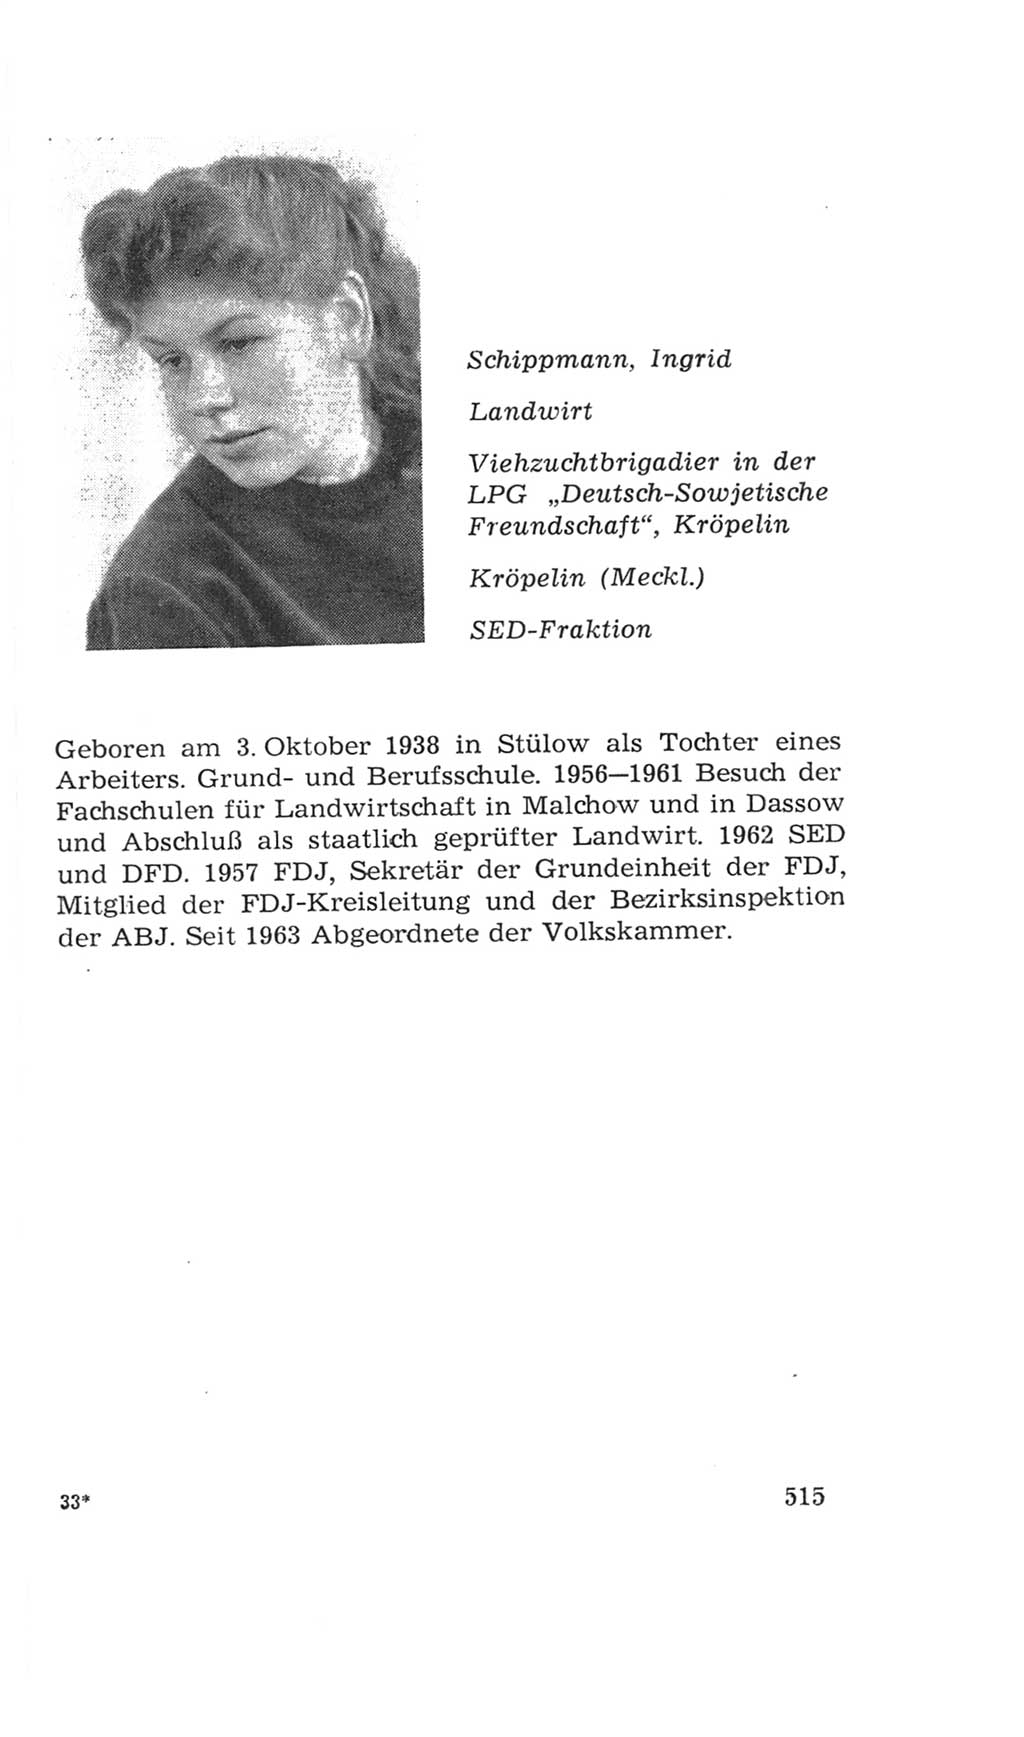 Volkskammer (VK) der Deutschen Demokratischen Republik (DDR), 4. Wahlperiode 1963-1967, Seite 515 (VK. DDR 4. WP. 1963-1967, S. 515)